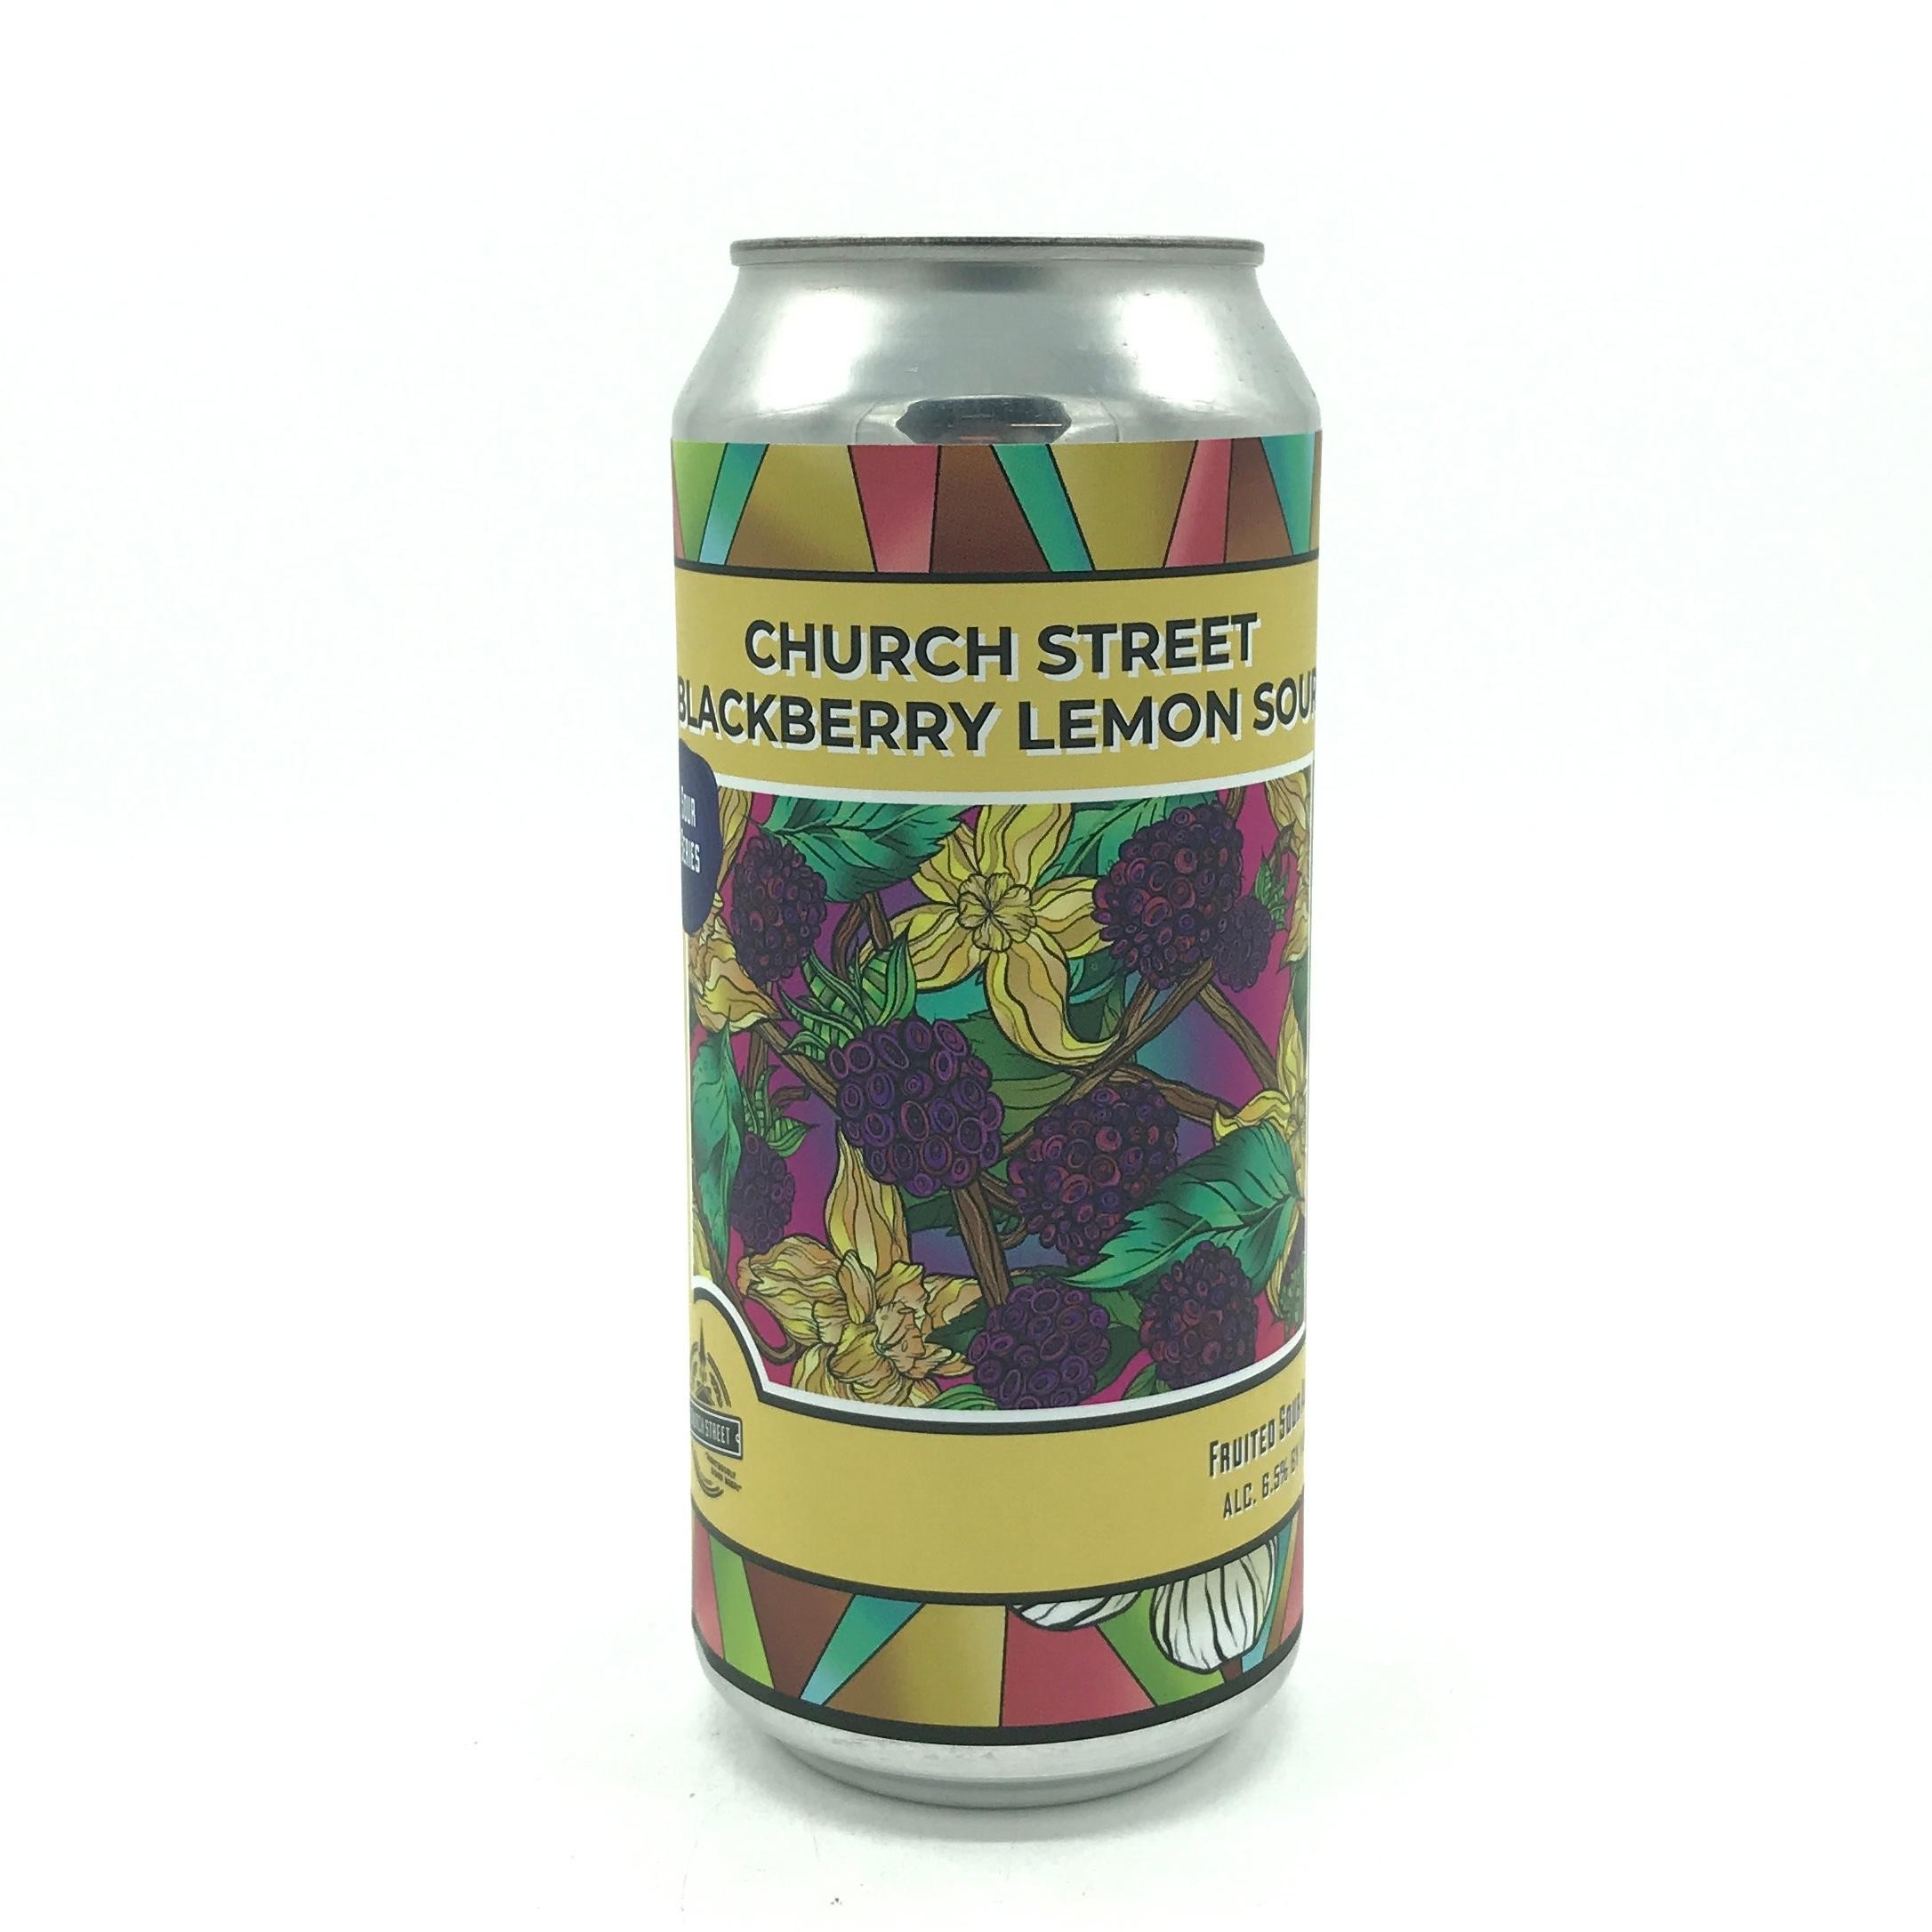 Church Street - Blackberry Lemon Sour